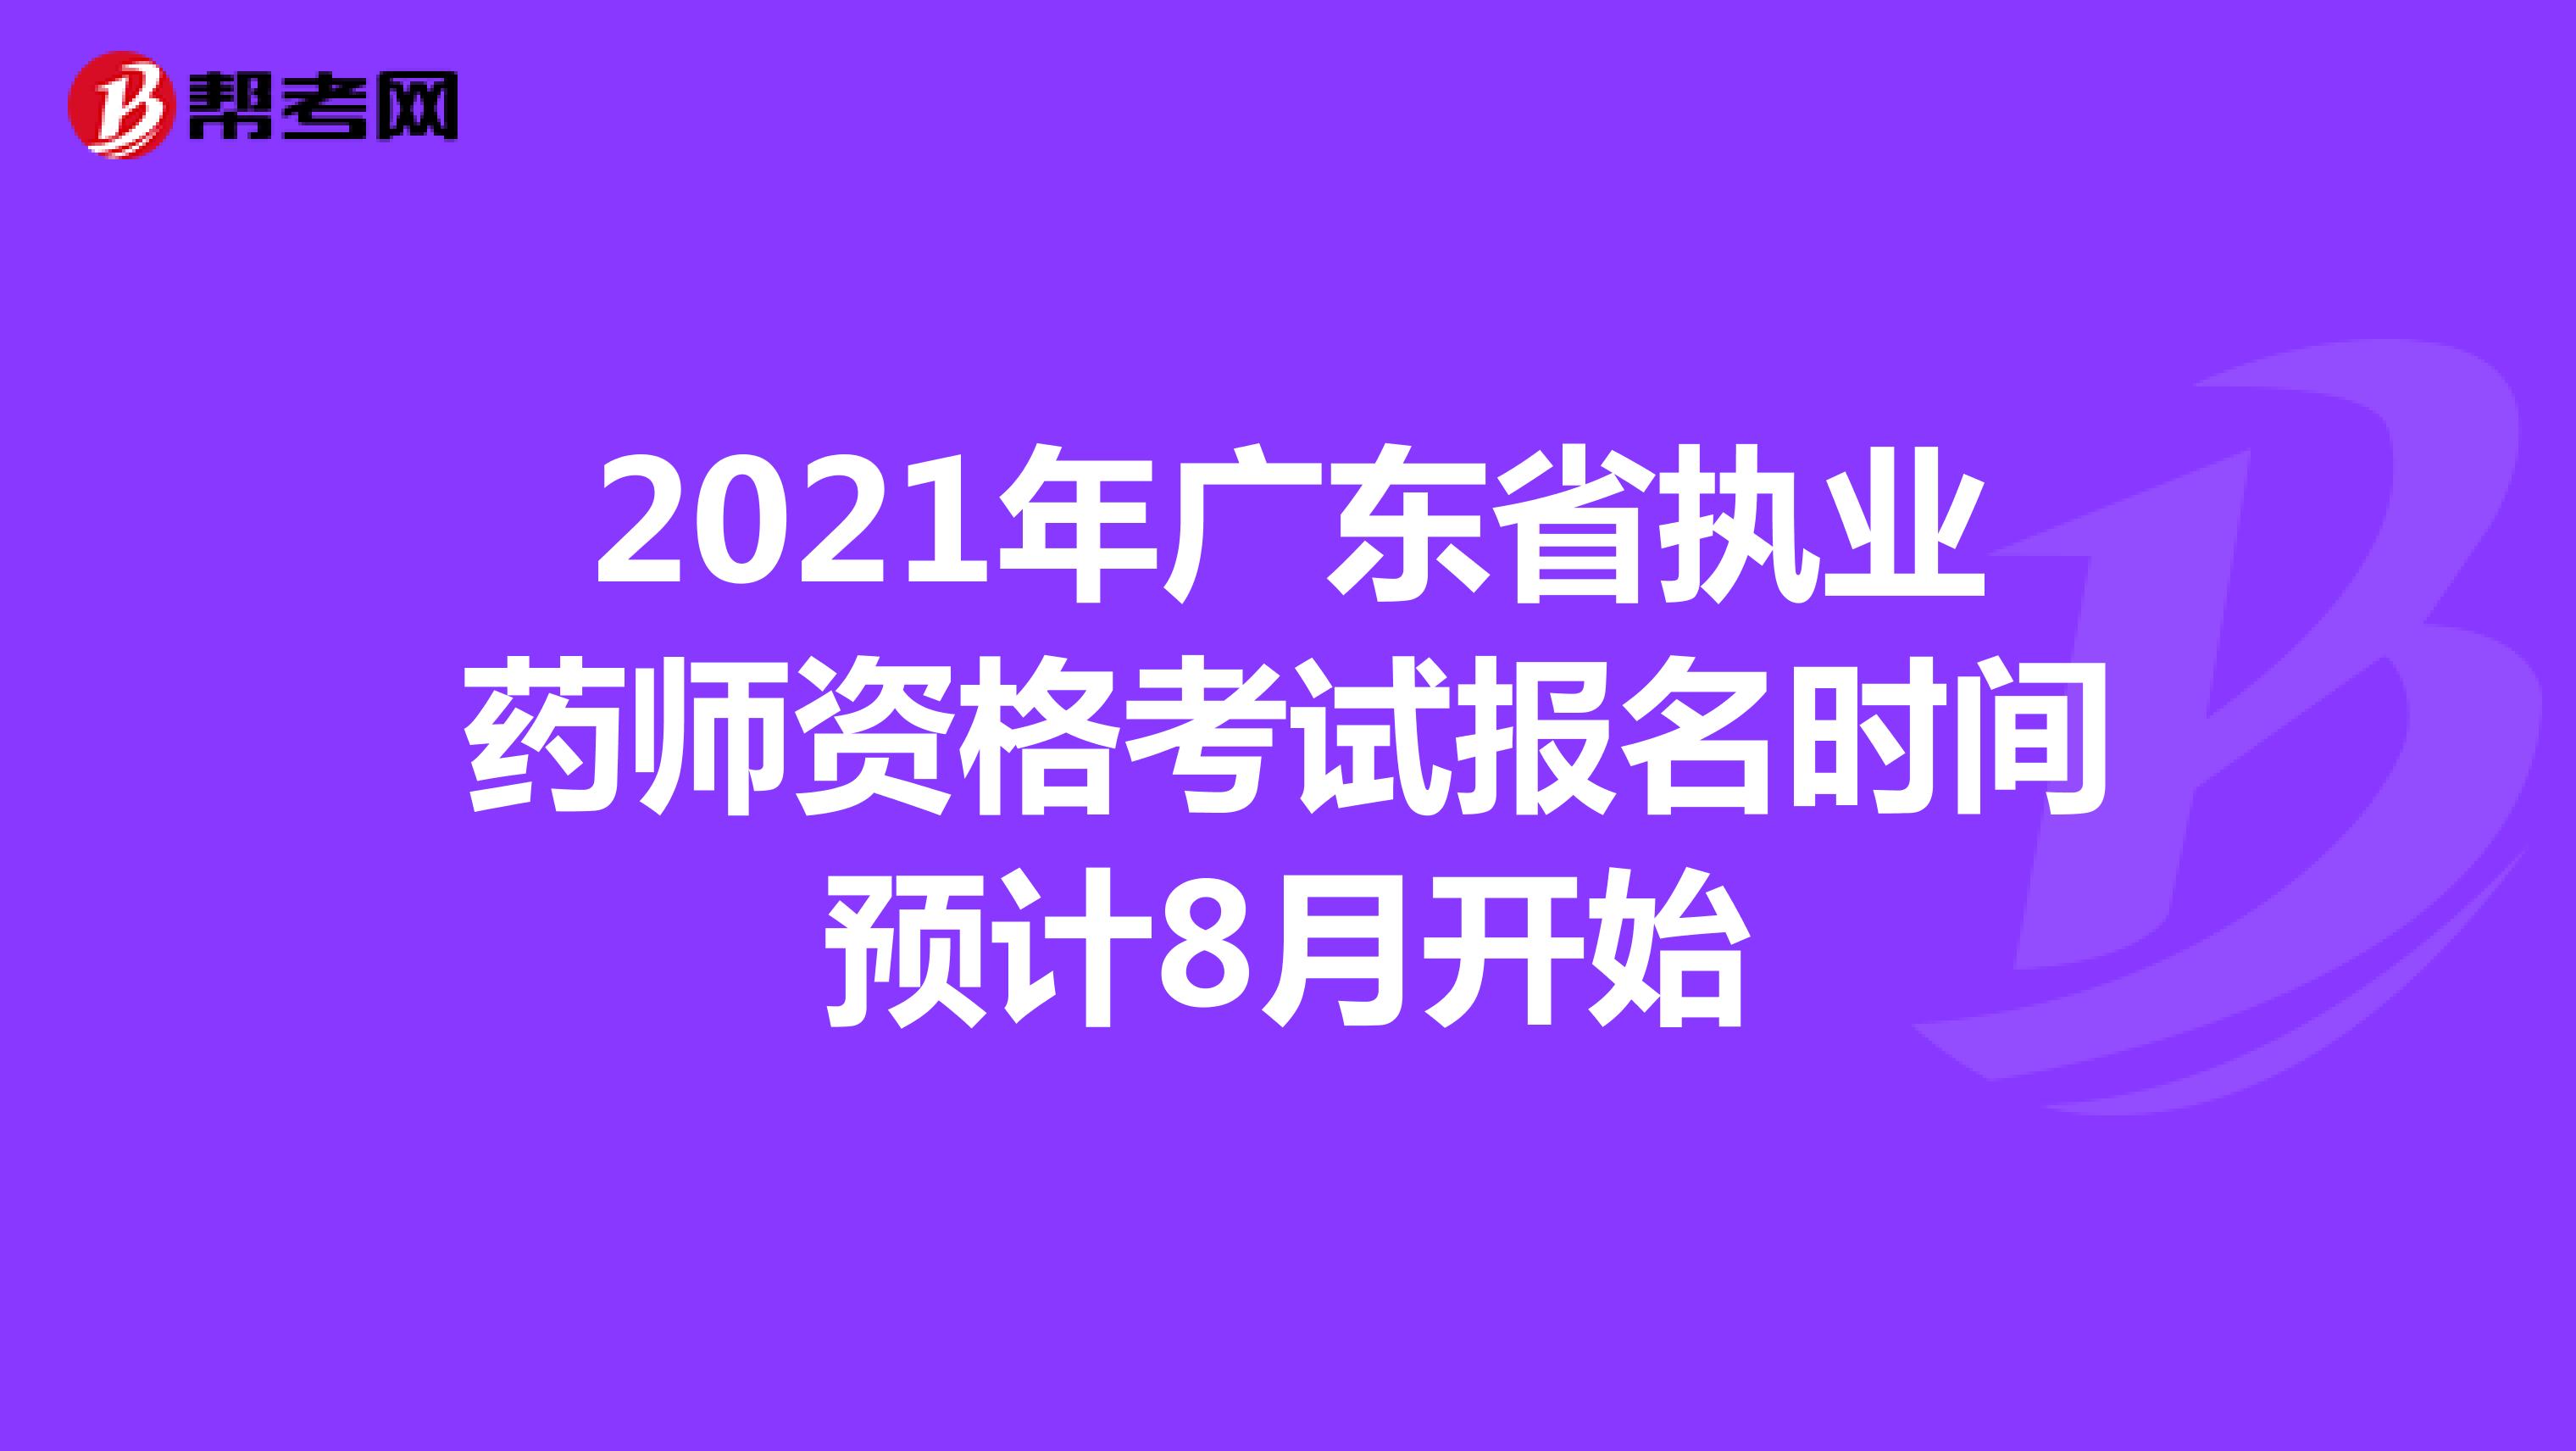 2021年广东省执业药师资格考试报名时间预计8月开始